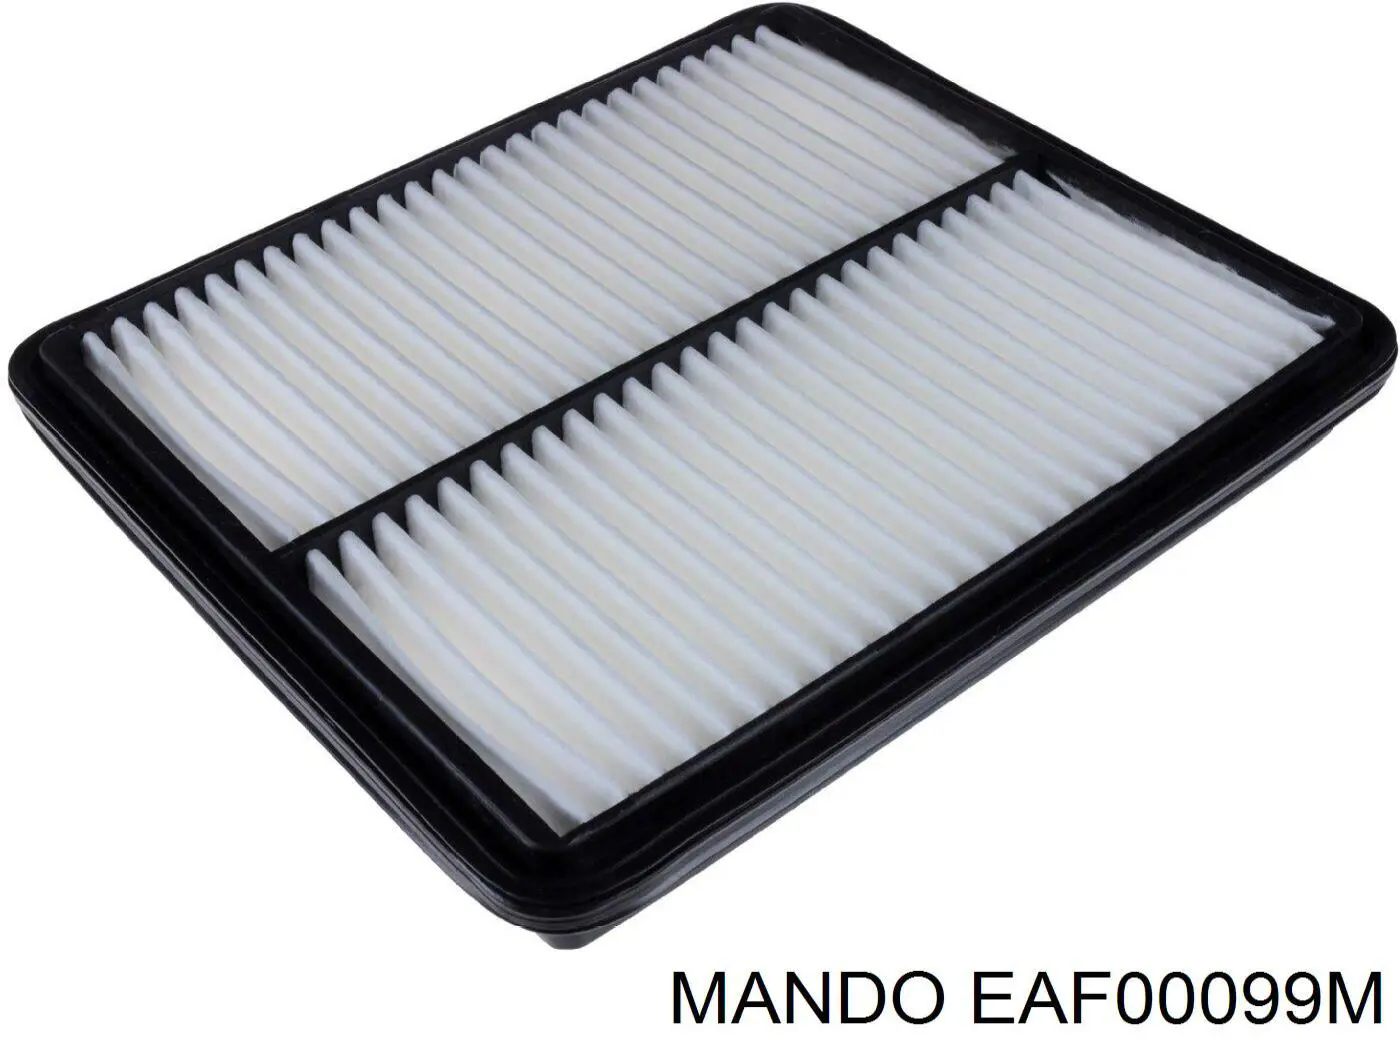 EAF00099M Mando фільтр повітряний